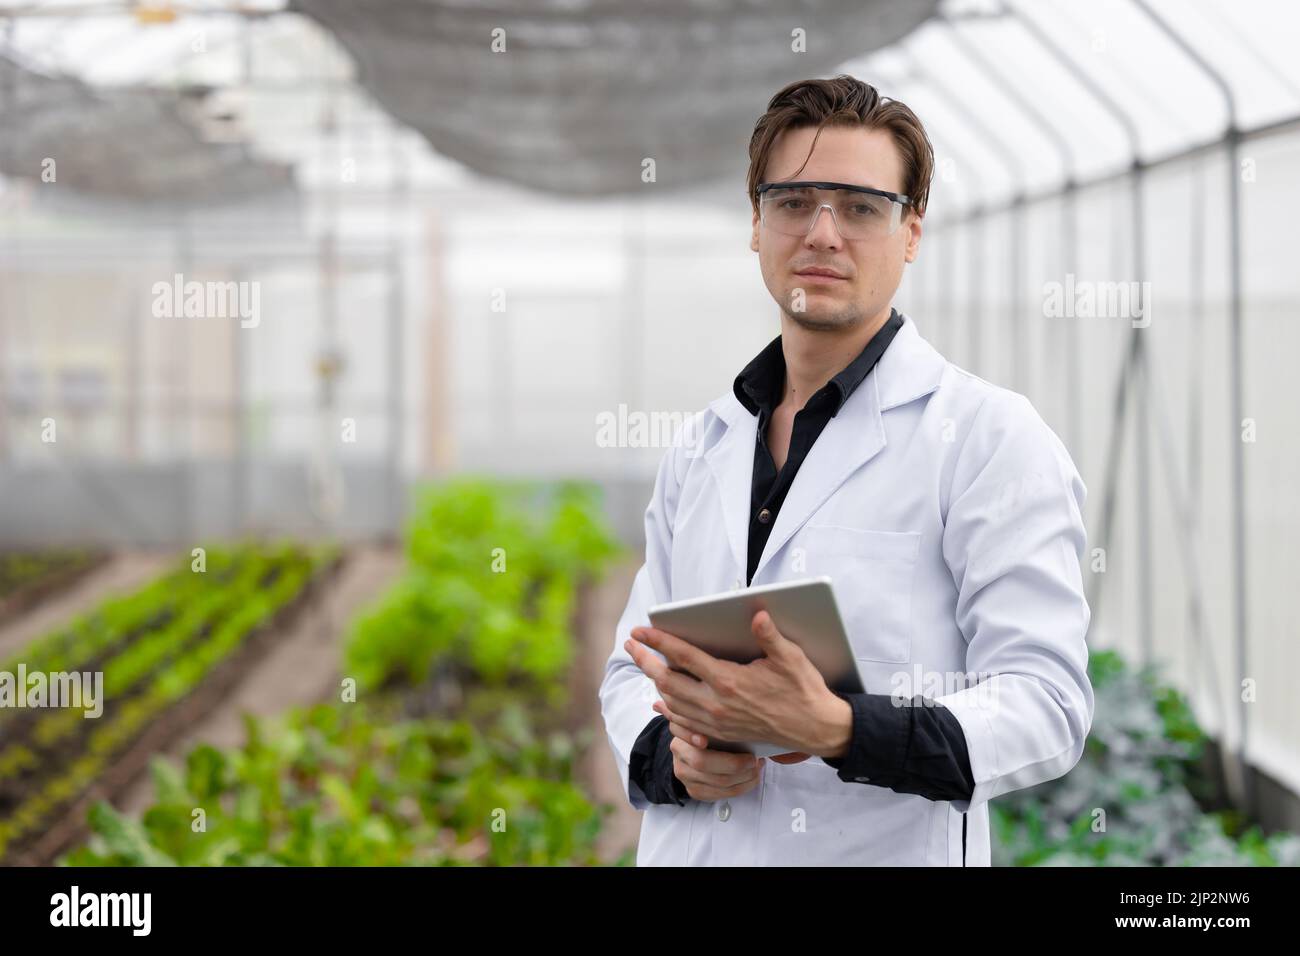 Portrait scientifique homme chercheur personnel travailleur collecte de l'information sur les plantes à l'étude dans une ferme agricole. Concept de science agricole. Banque D'Images